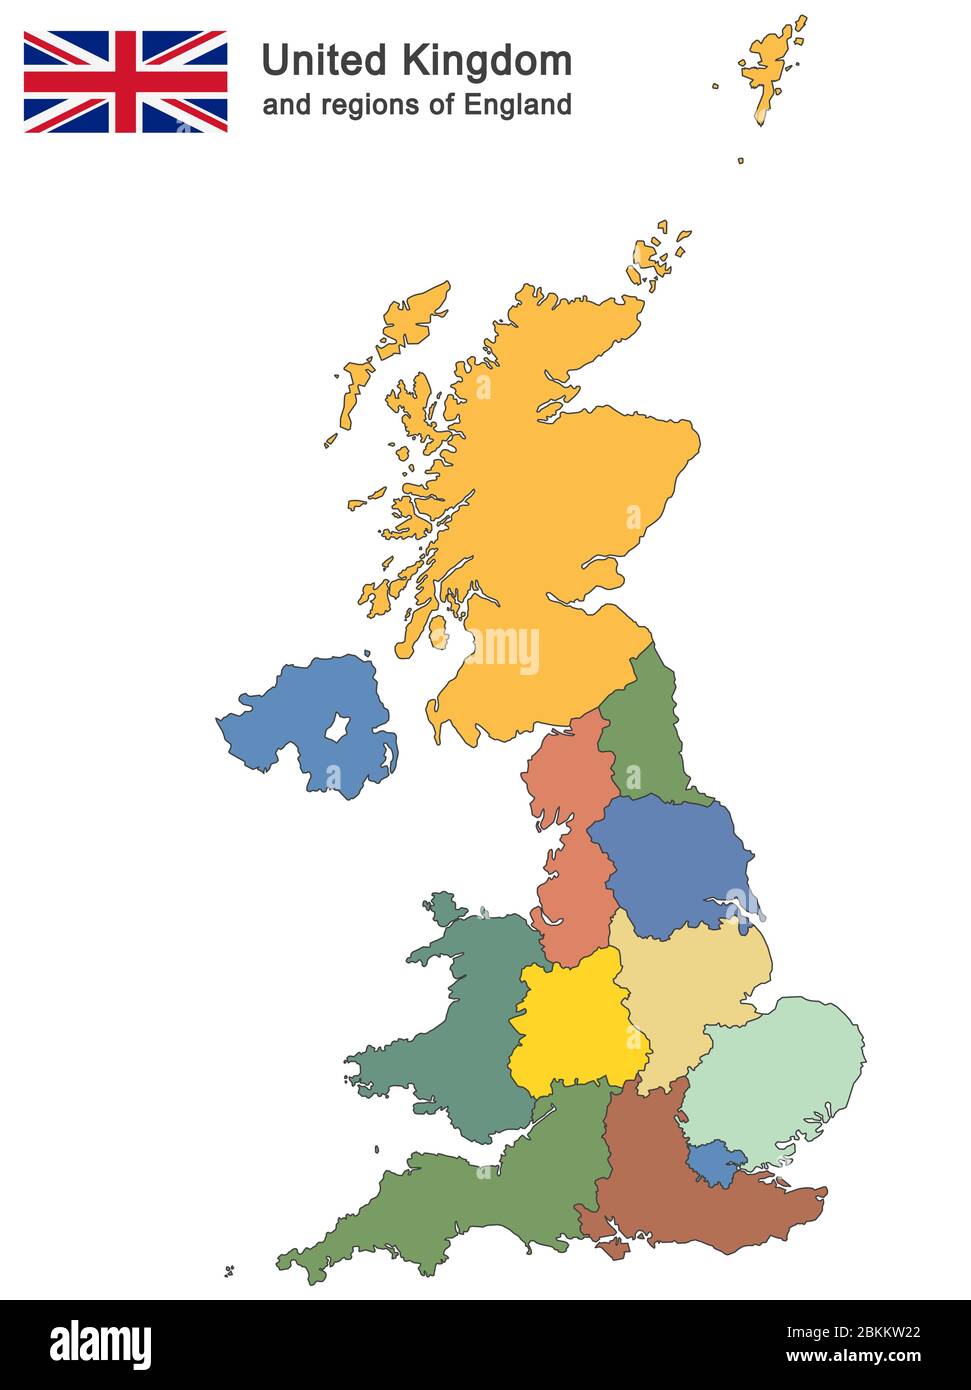 Paese europeo Regno Unito e regioni d'Inghilterra Illustrazione Vettoriale